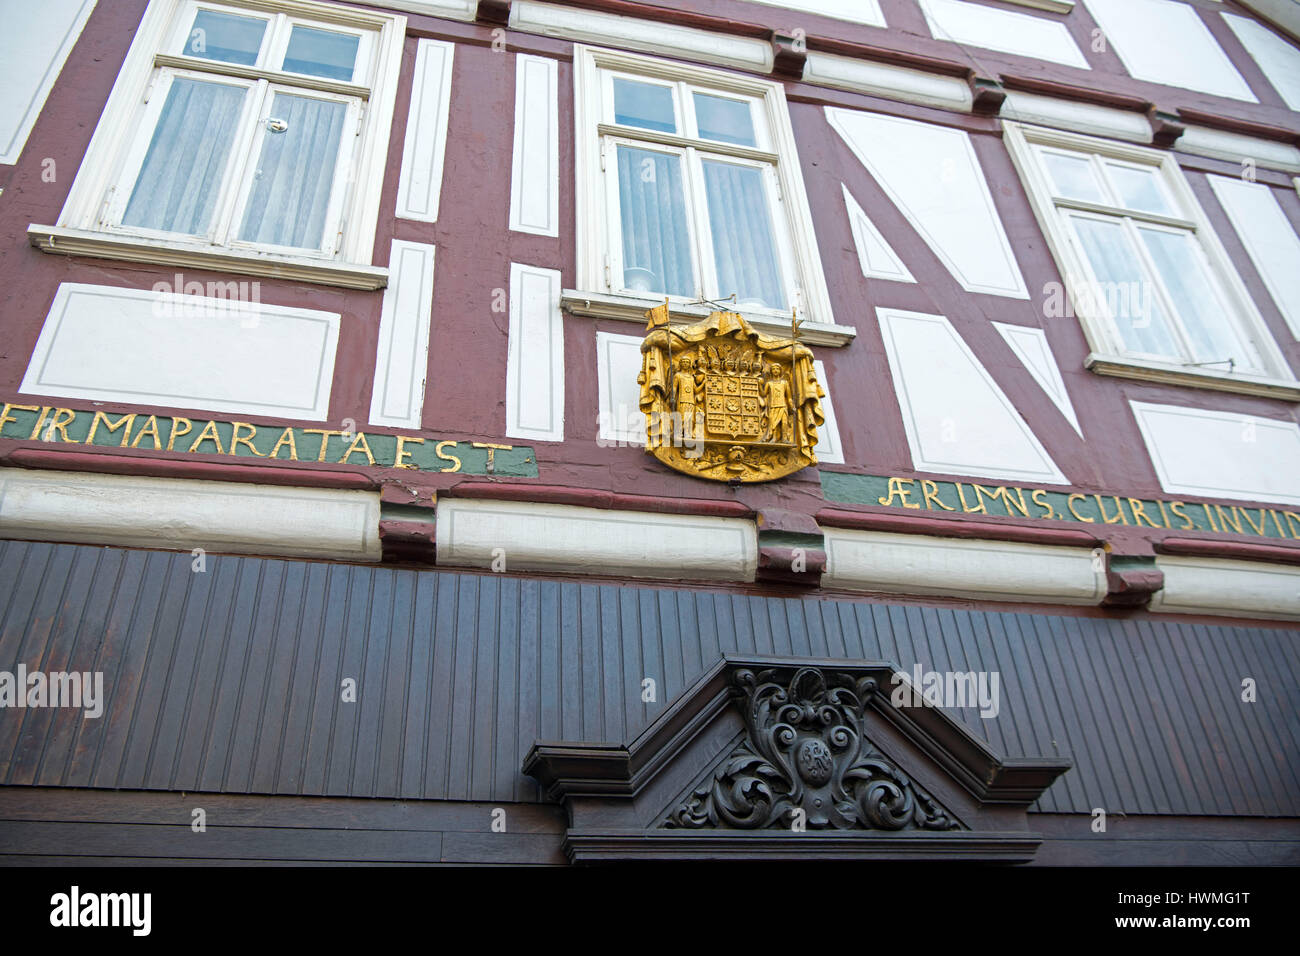 Deutschland, Nordrhein-Westfalen, Detmold, Altstadthaus mit Wappen Stock Photo